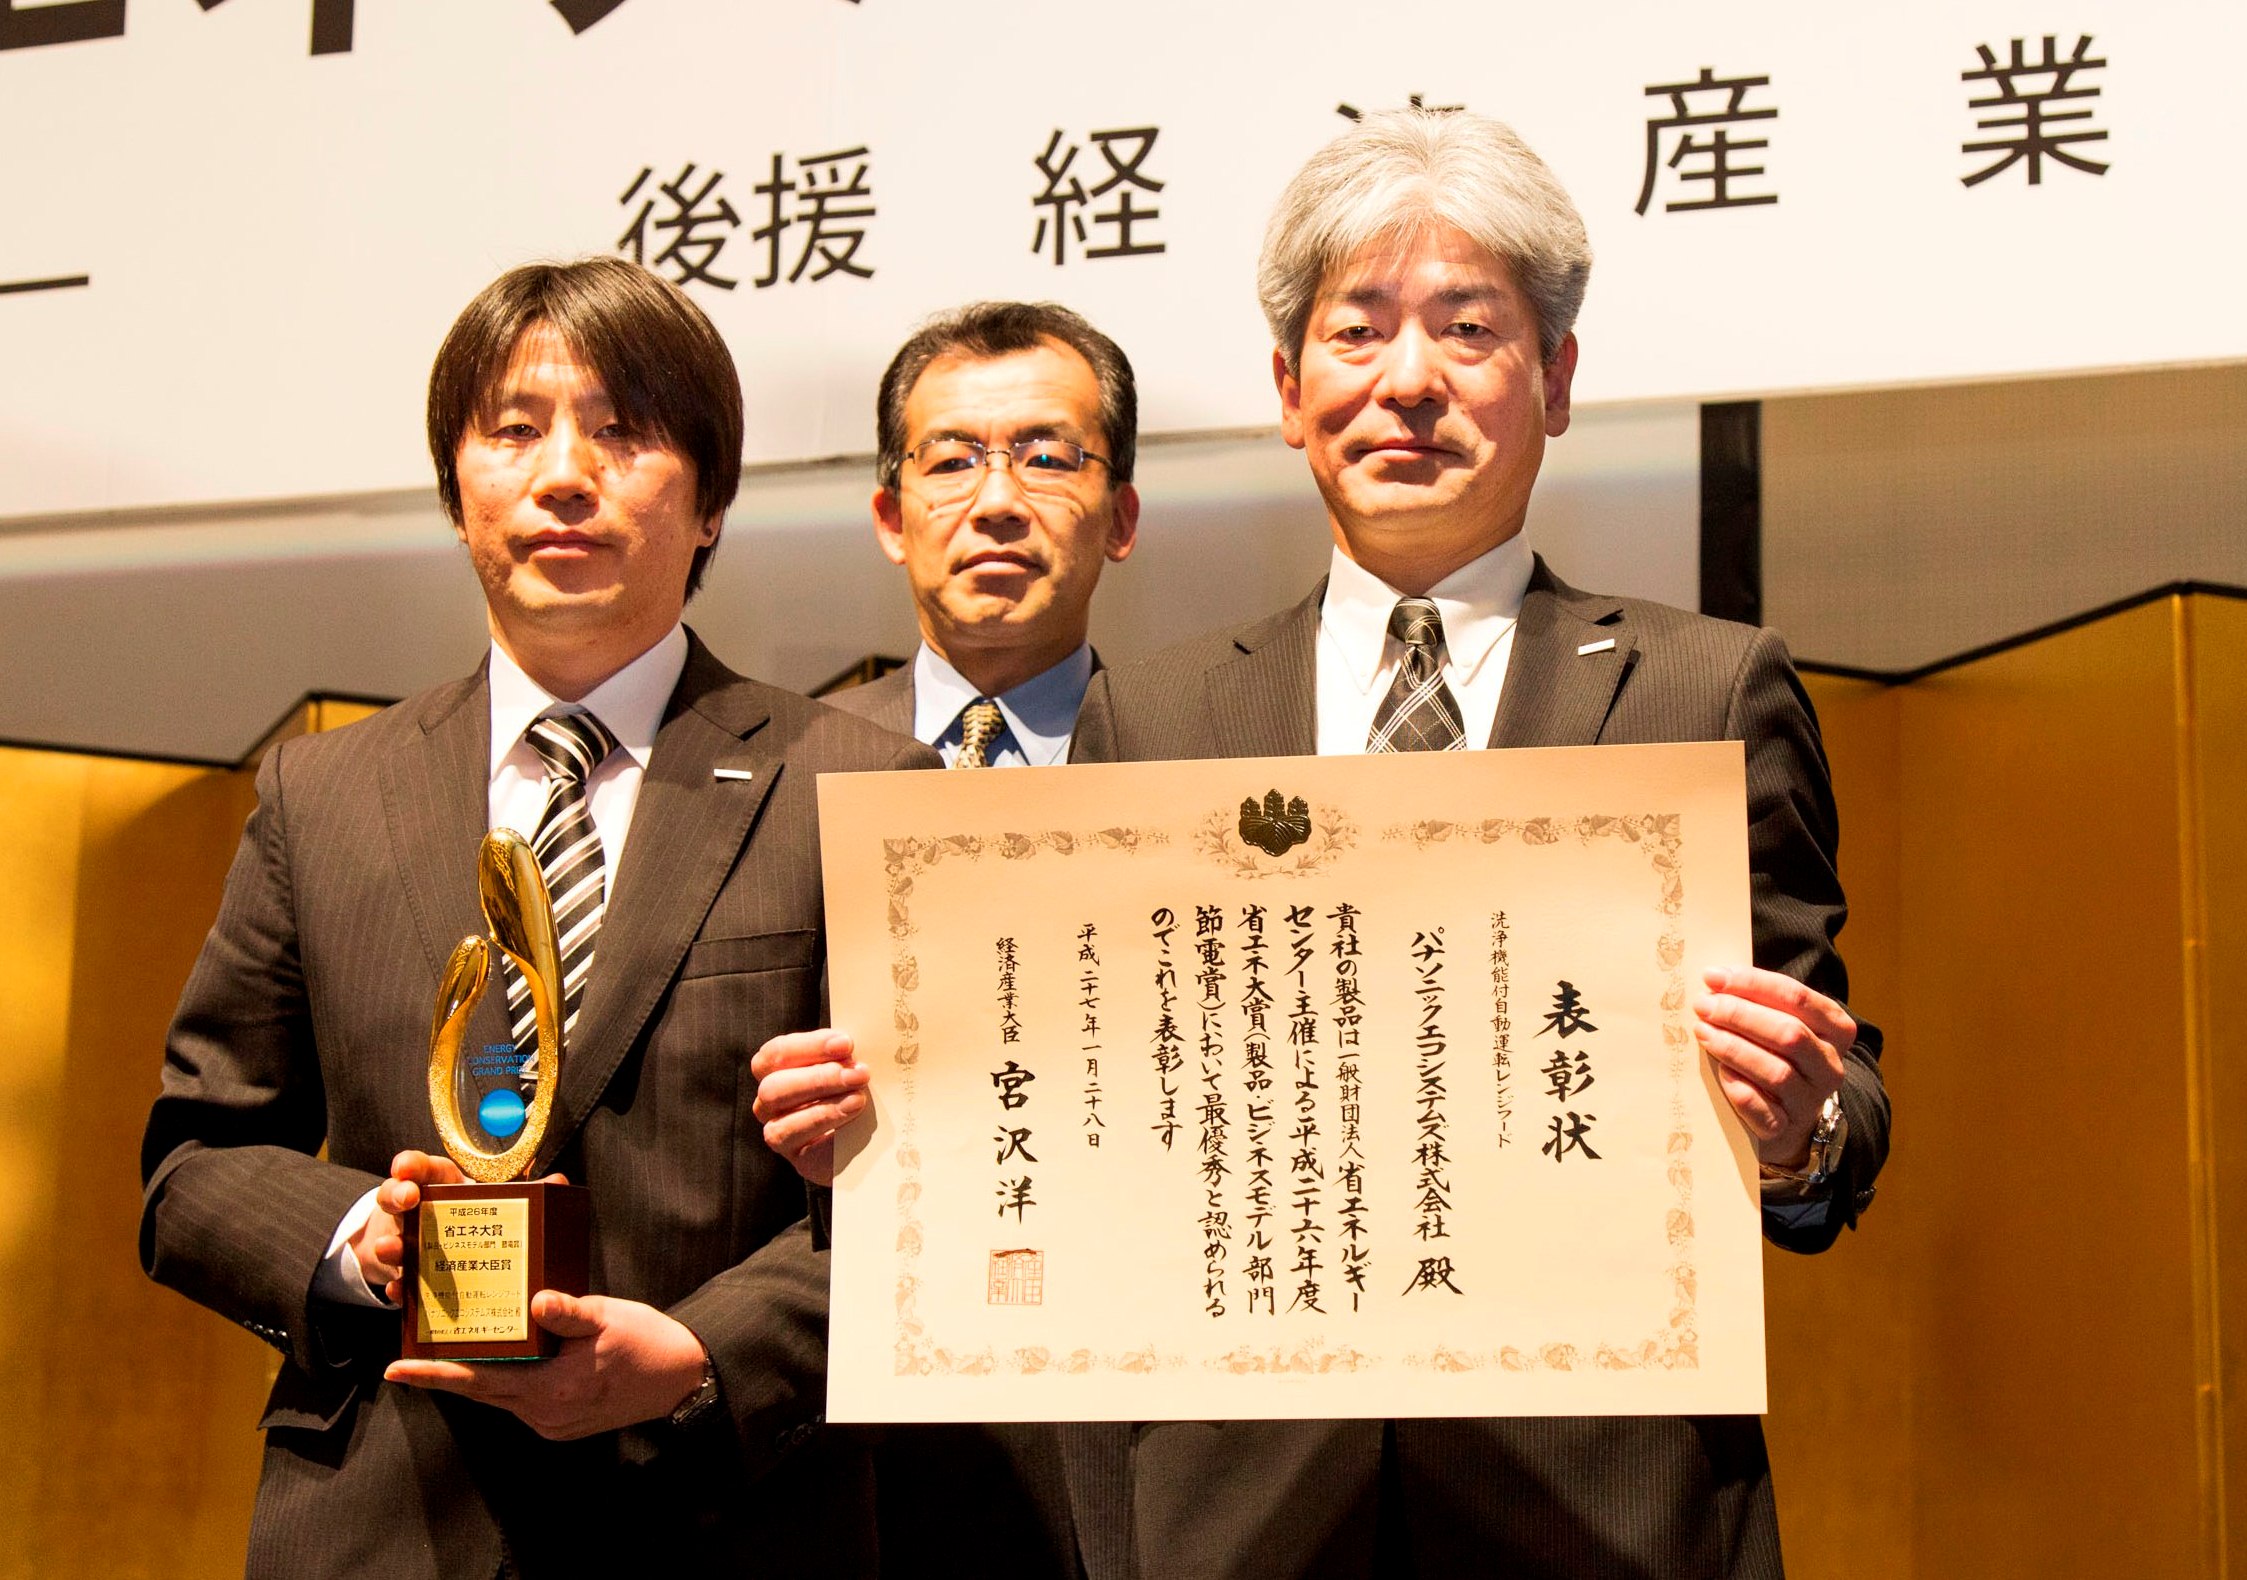 「洗浄機能付自動運転レンジフード」が「平成26年度省エネ大賞」で経済産業大臣賞を受賞 